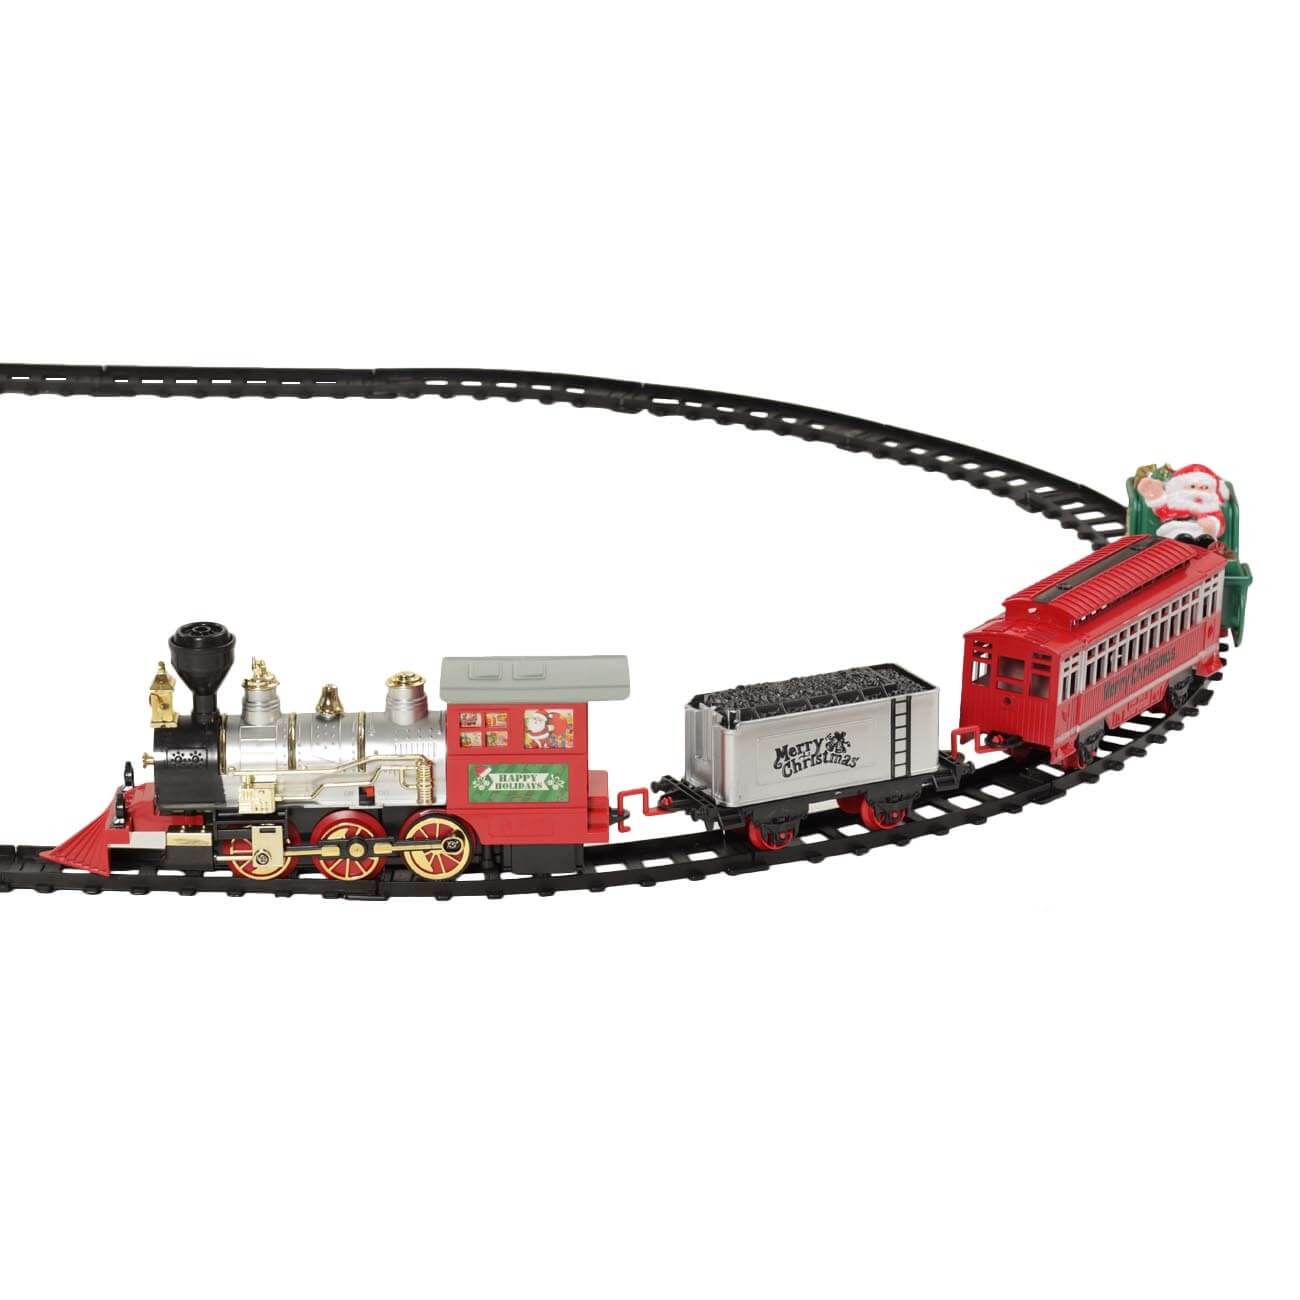 Железная дорога игрушечная, S, музыкальная, с подсветкой/дымом, пластик, Game rail железная дорога игрушечная 28 см дерево город game